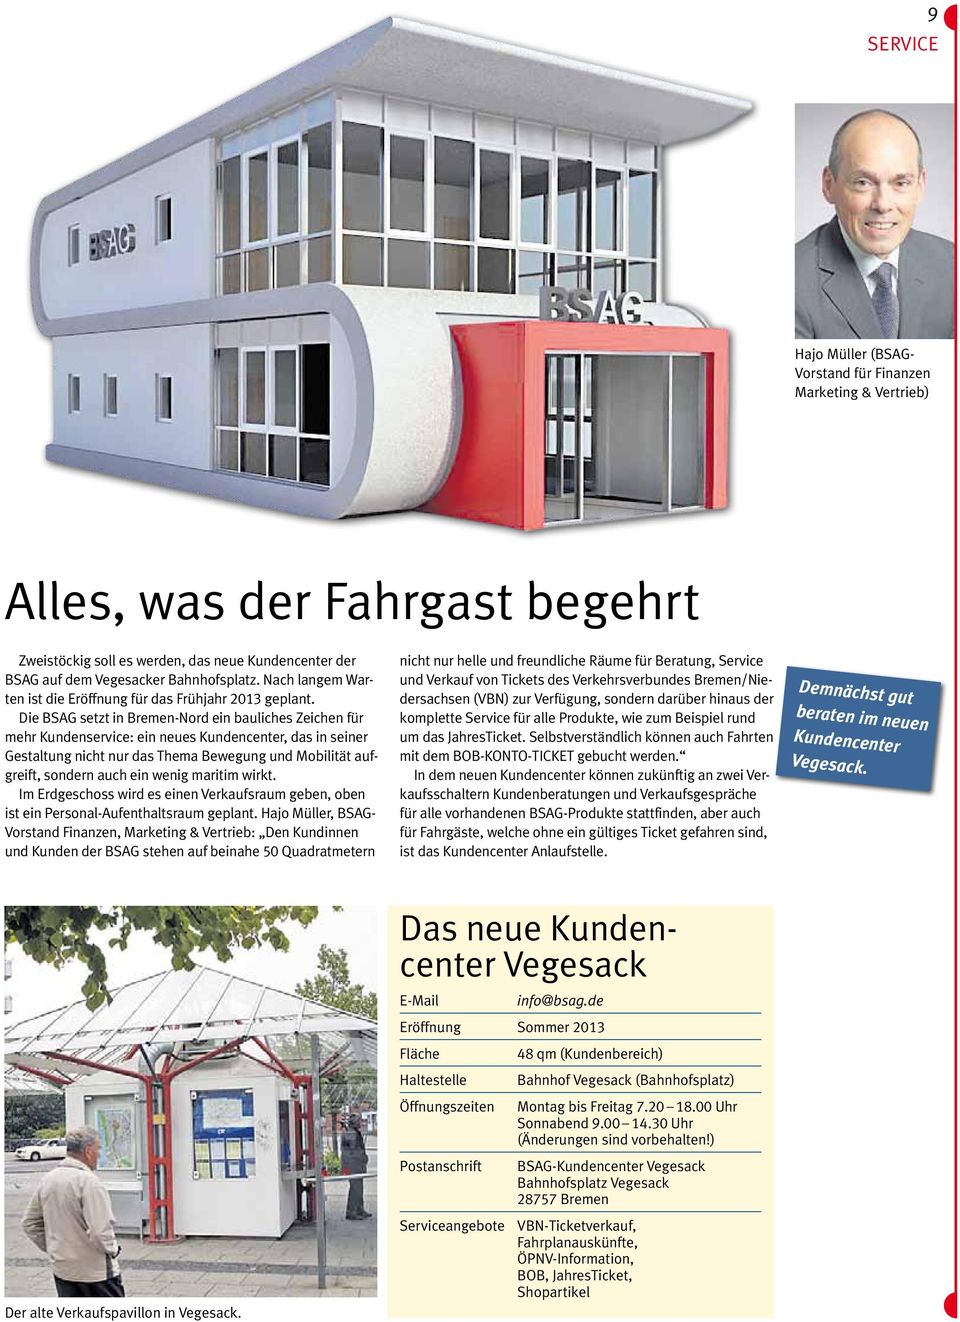 Die BSAG setzt in Bremen-Nord ein bauliches Zeichen für mehr Kundenservice: ein neues Kundencenter, das in seiner Gestaltung nicht nur das Thema Bewegung und Mobilität aufgreift, sondern auch ein